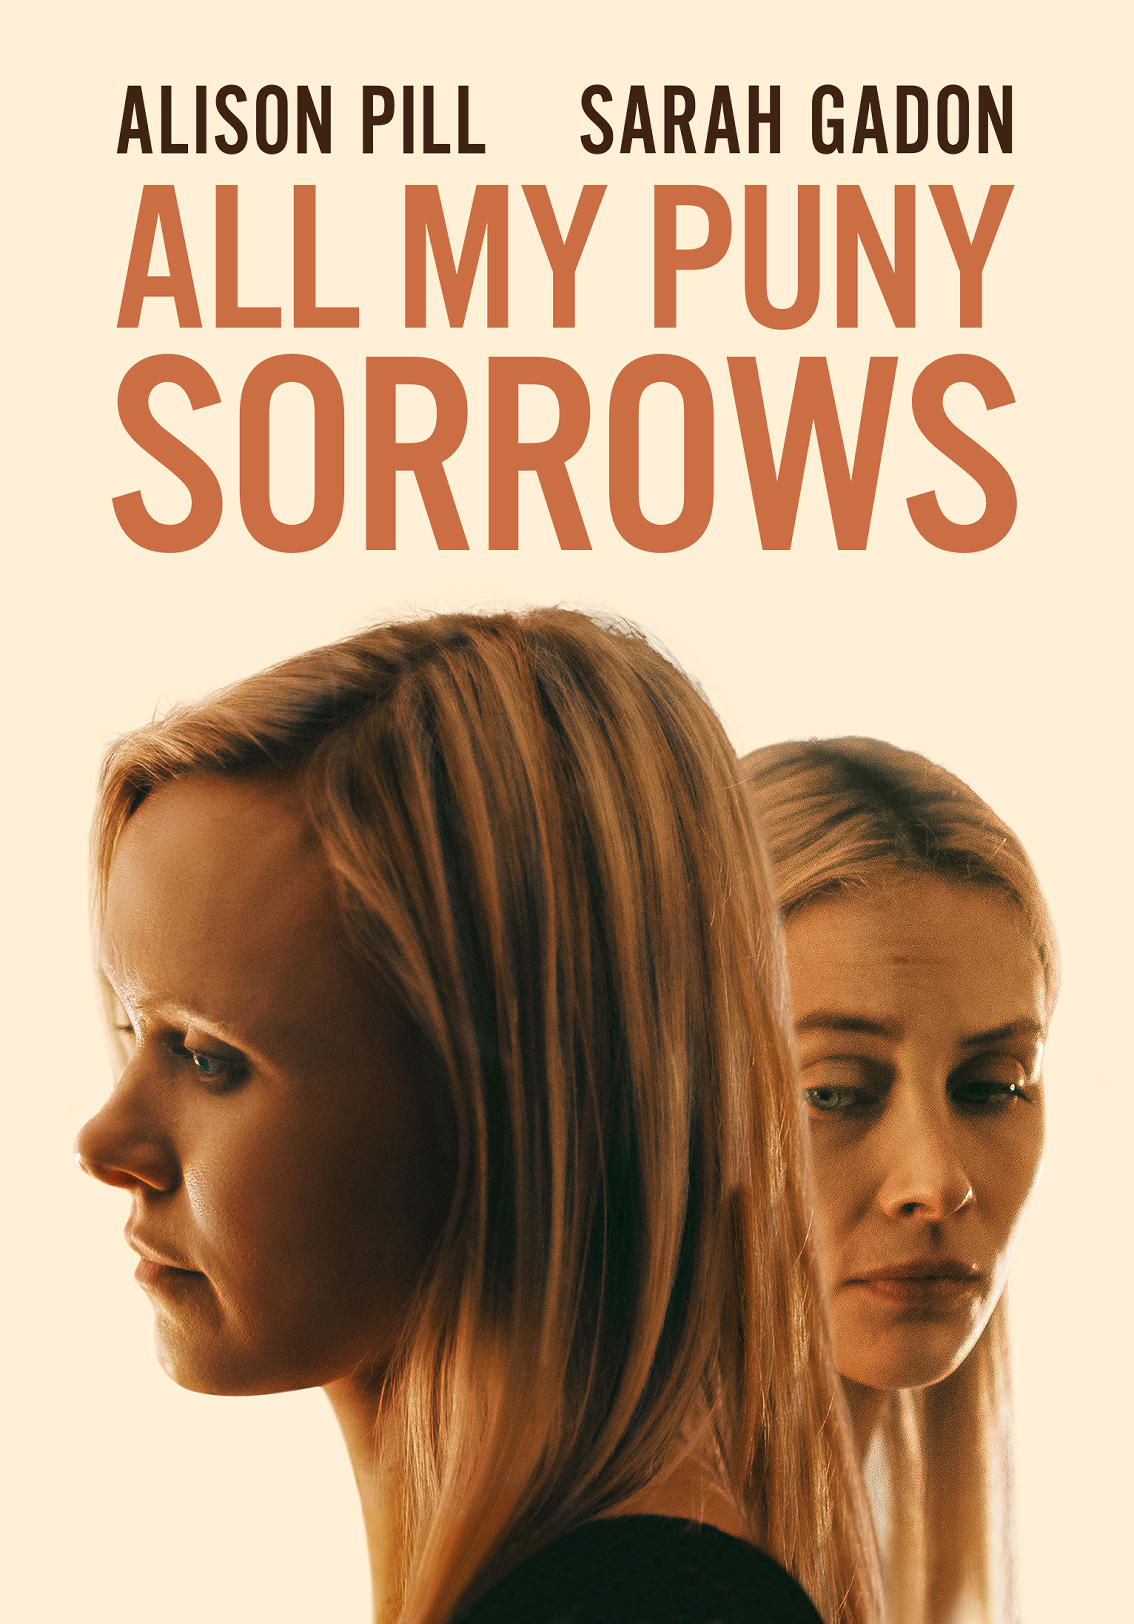 puny sorrows